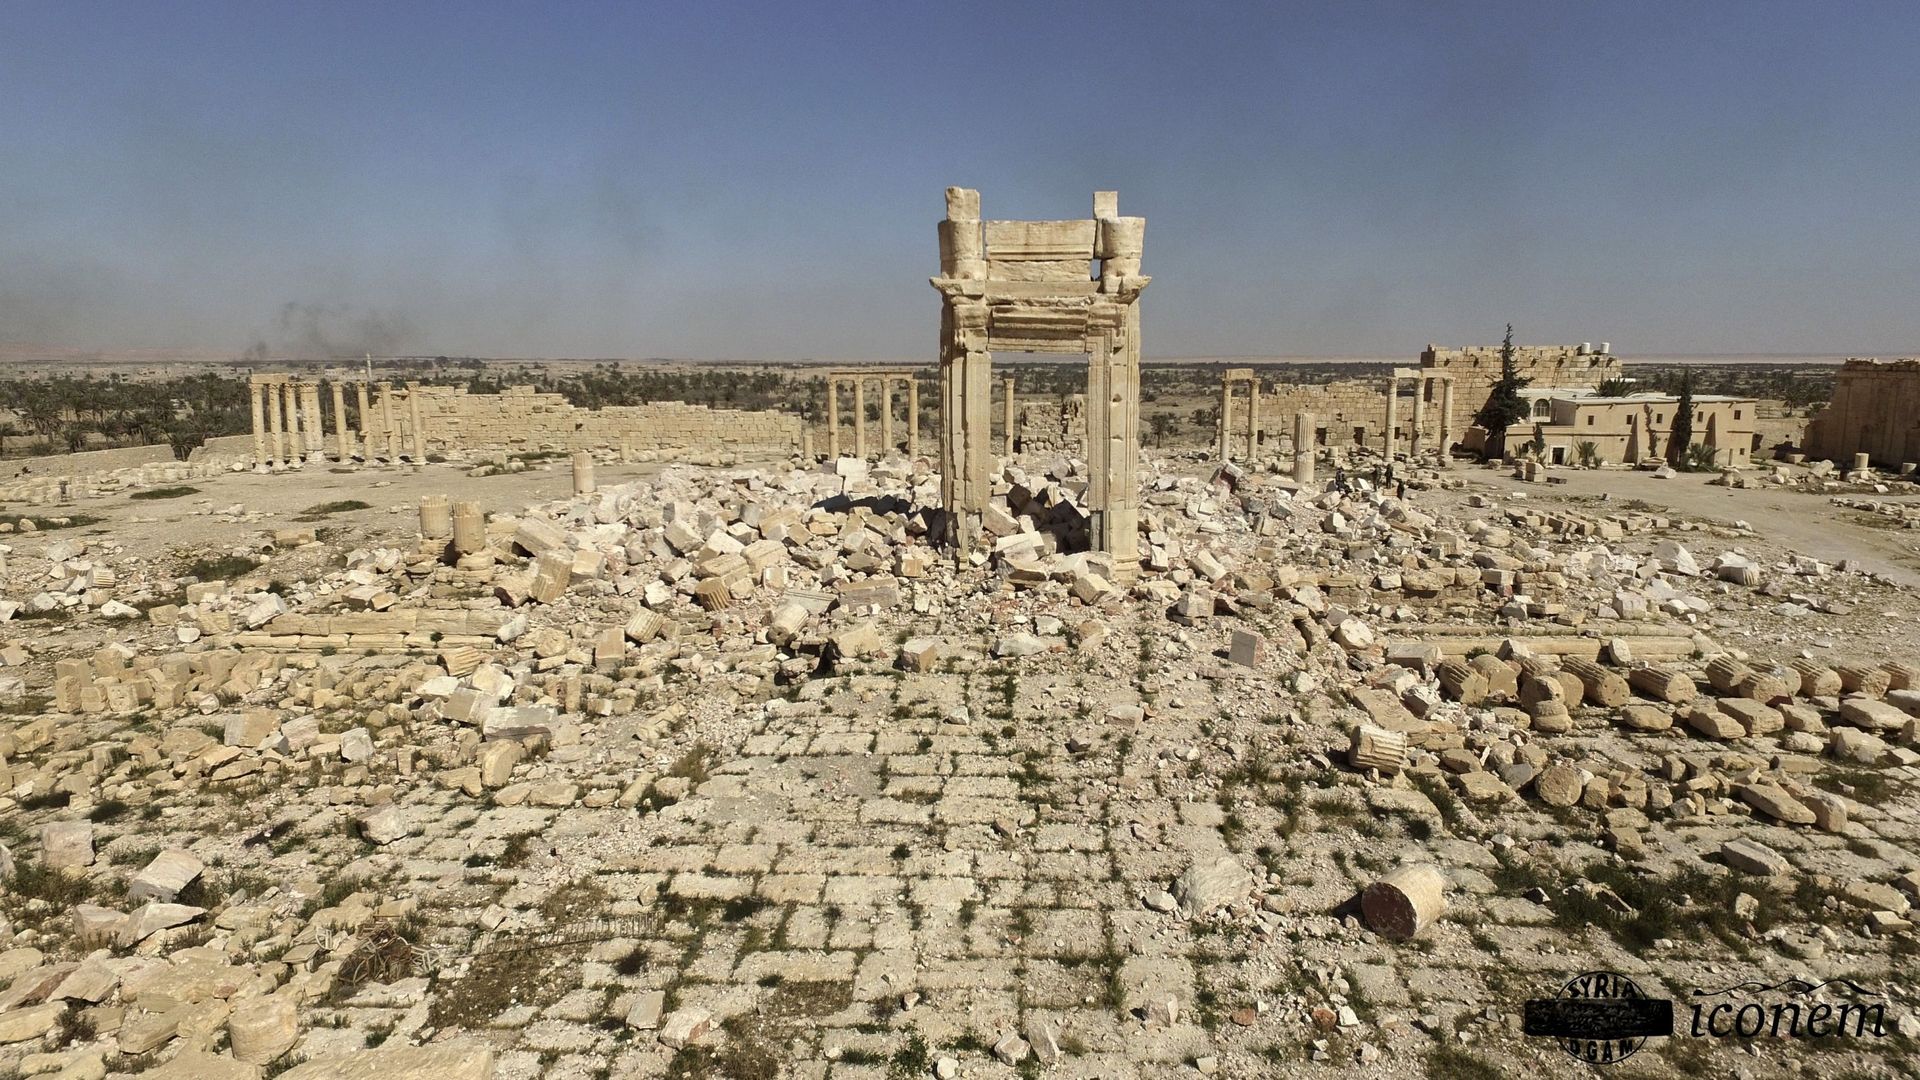 Les sites antiques endommagés et détruits par l'Etat islamique